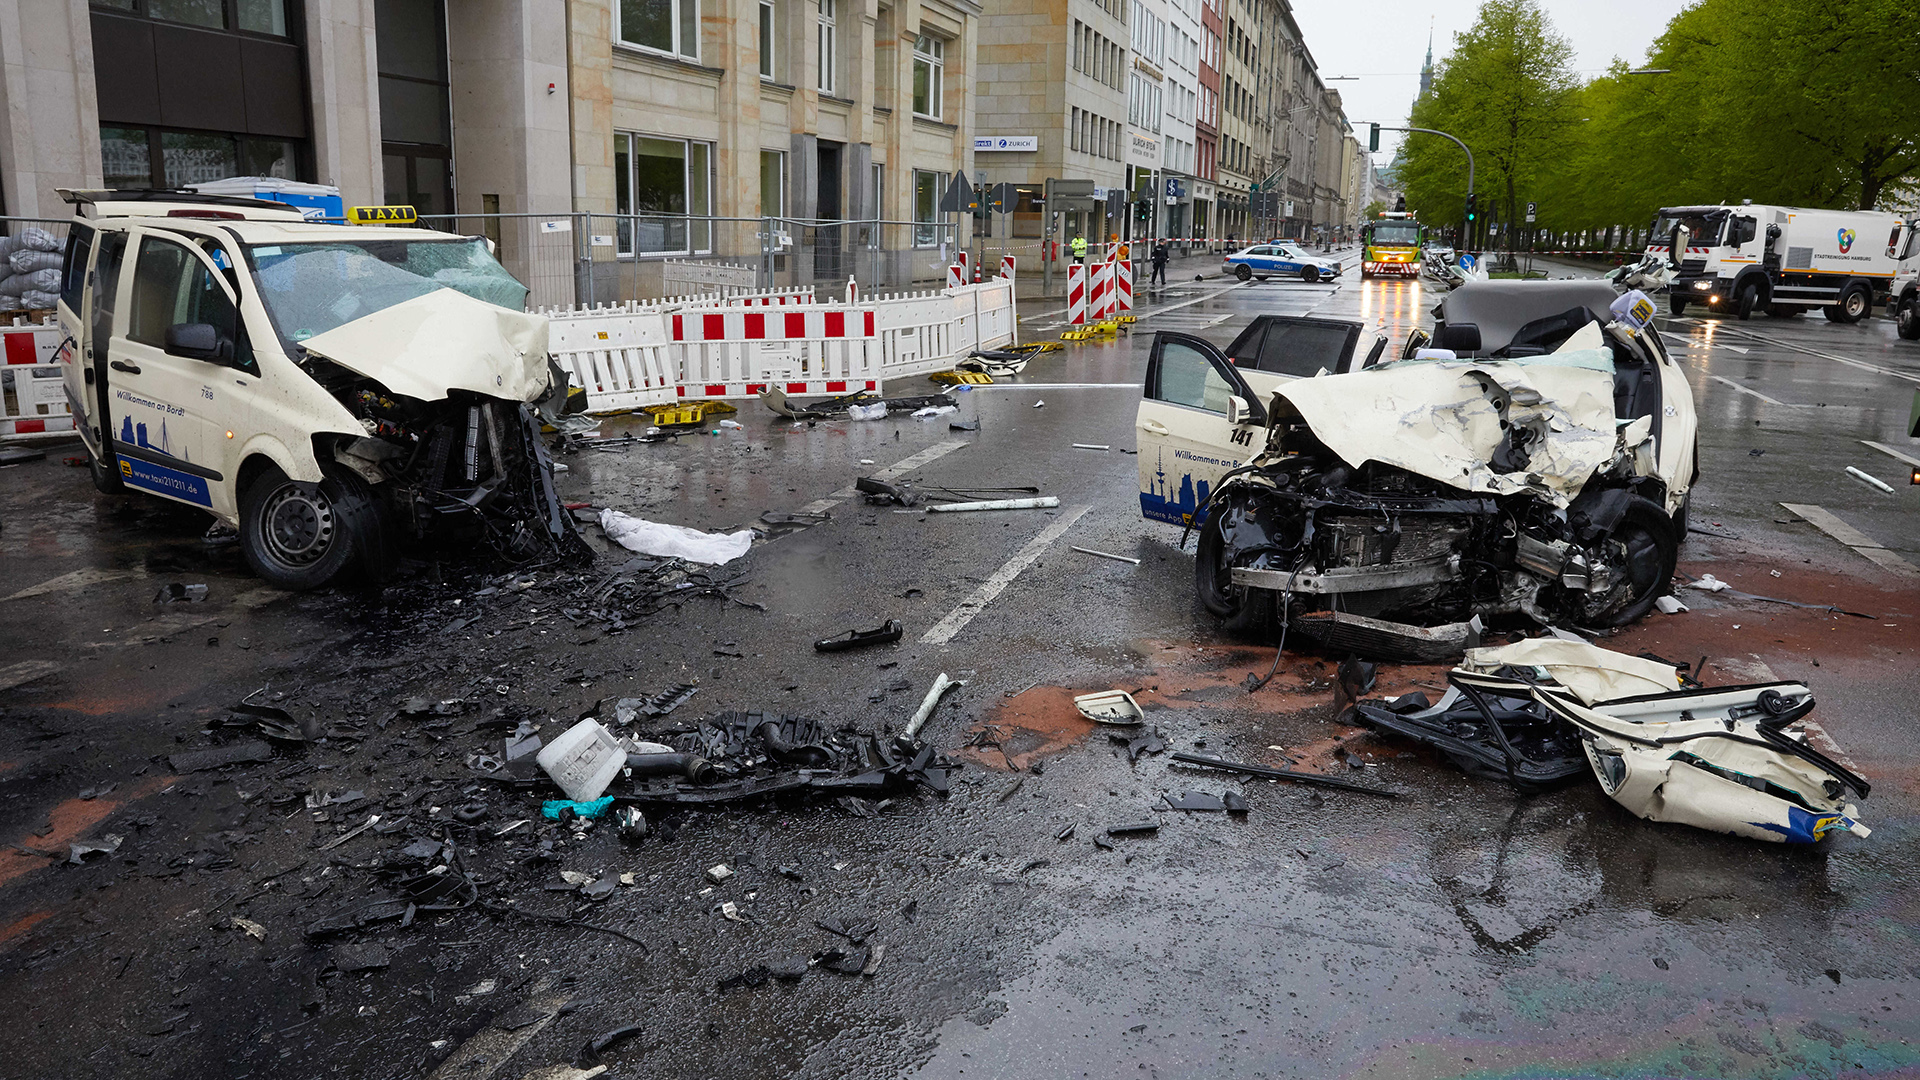 Die Wracks, von zwei nach einem Unfall komplett zerstörten Taxis, liegen am 04.05.2017 am Ballindamm in Hamburg auf der Straße. | picture alliance / Georg Wendt/d